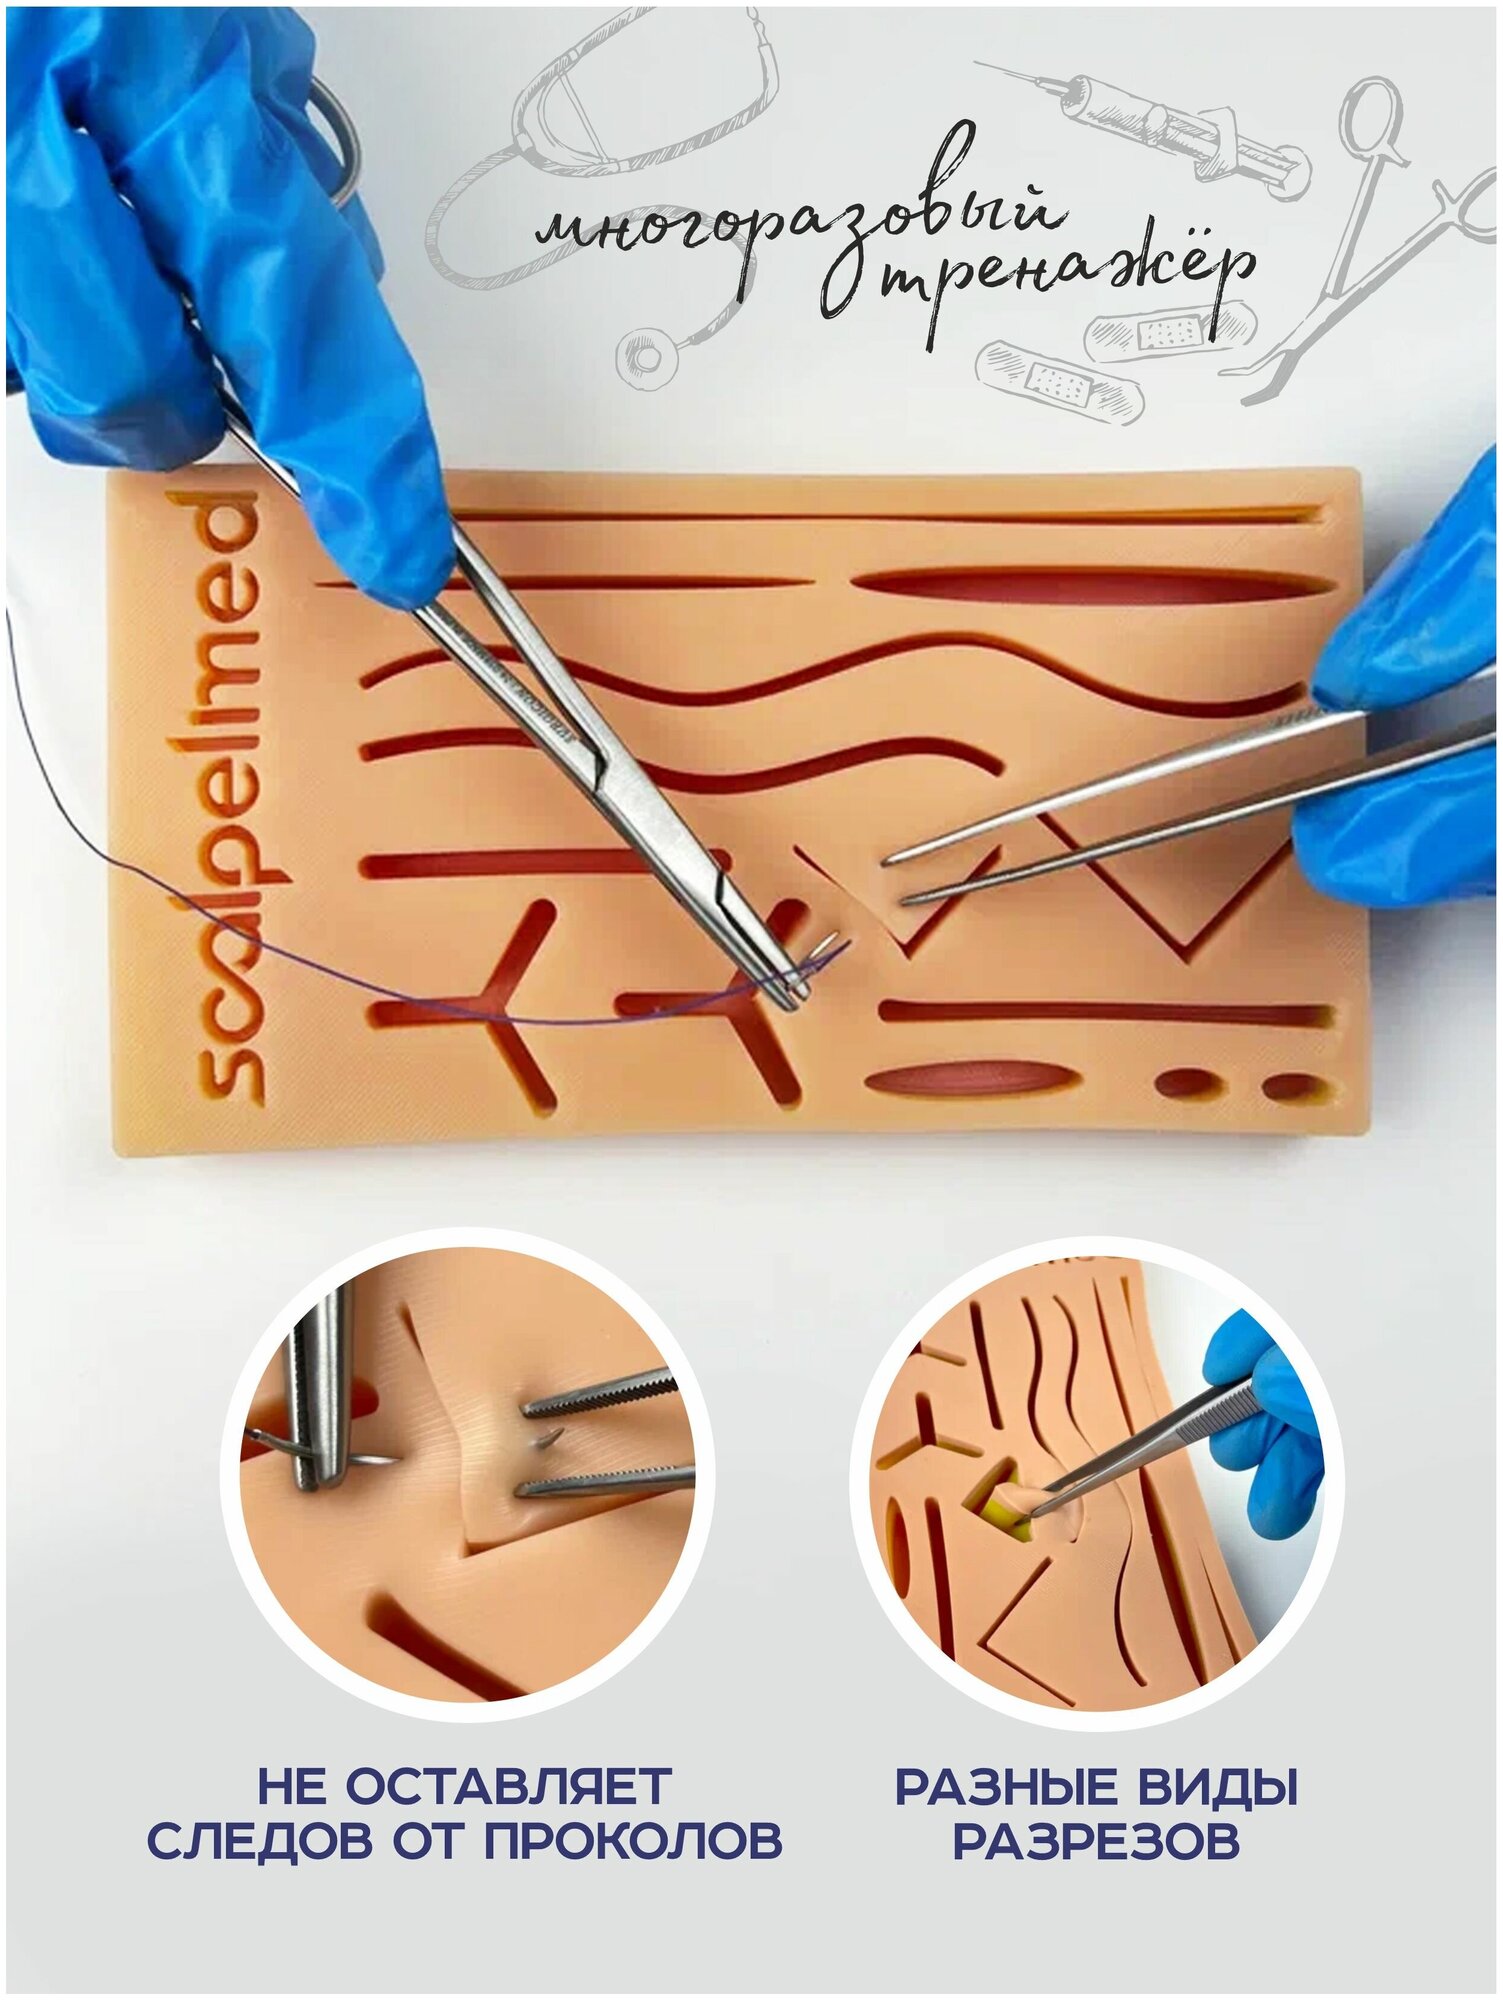 Scalpel Med Хирургический тренажер / хирургический набор. Симулятор для шитья из силикона.